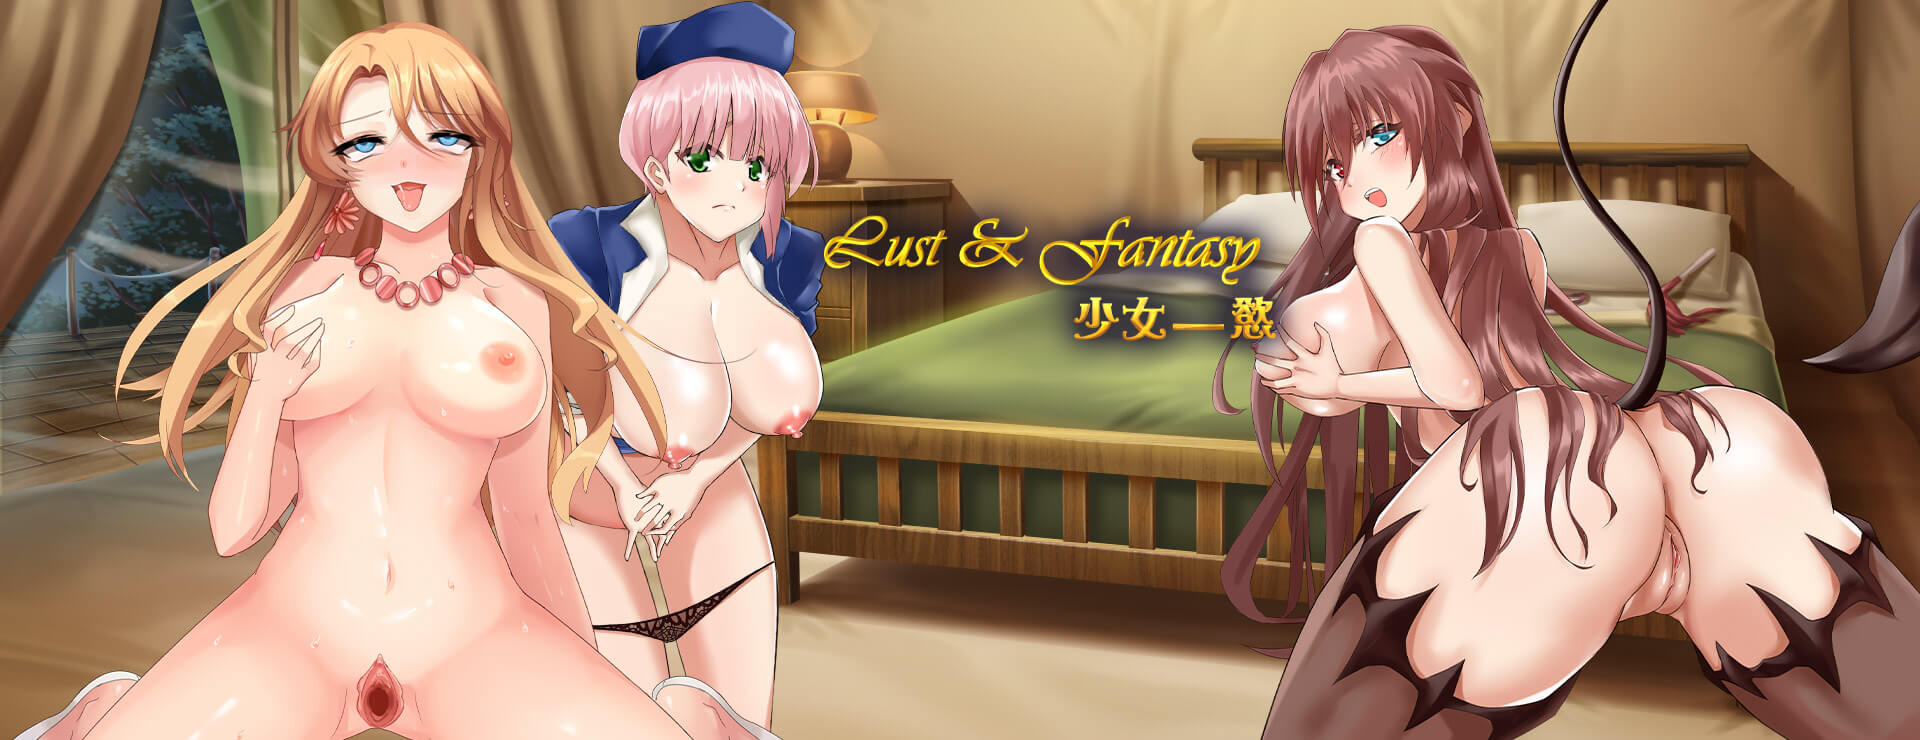 Lust & Fantasy - RPG Gra